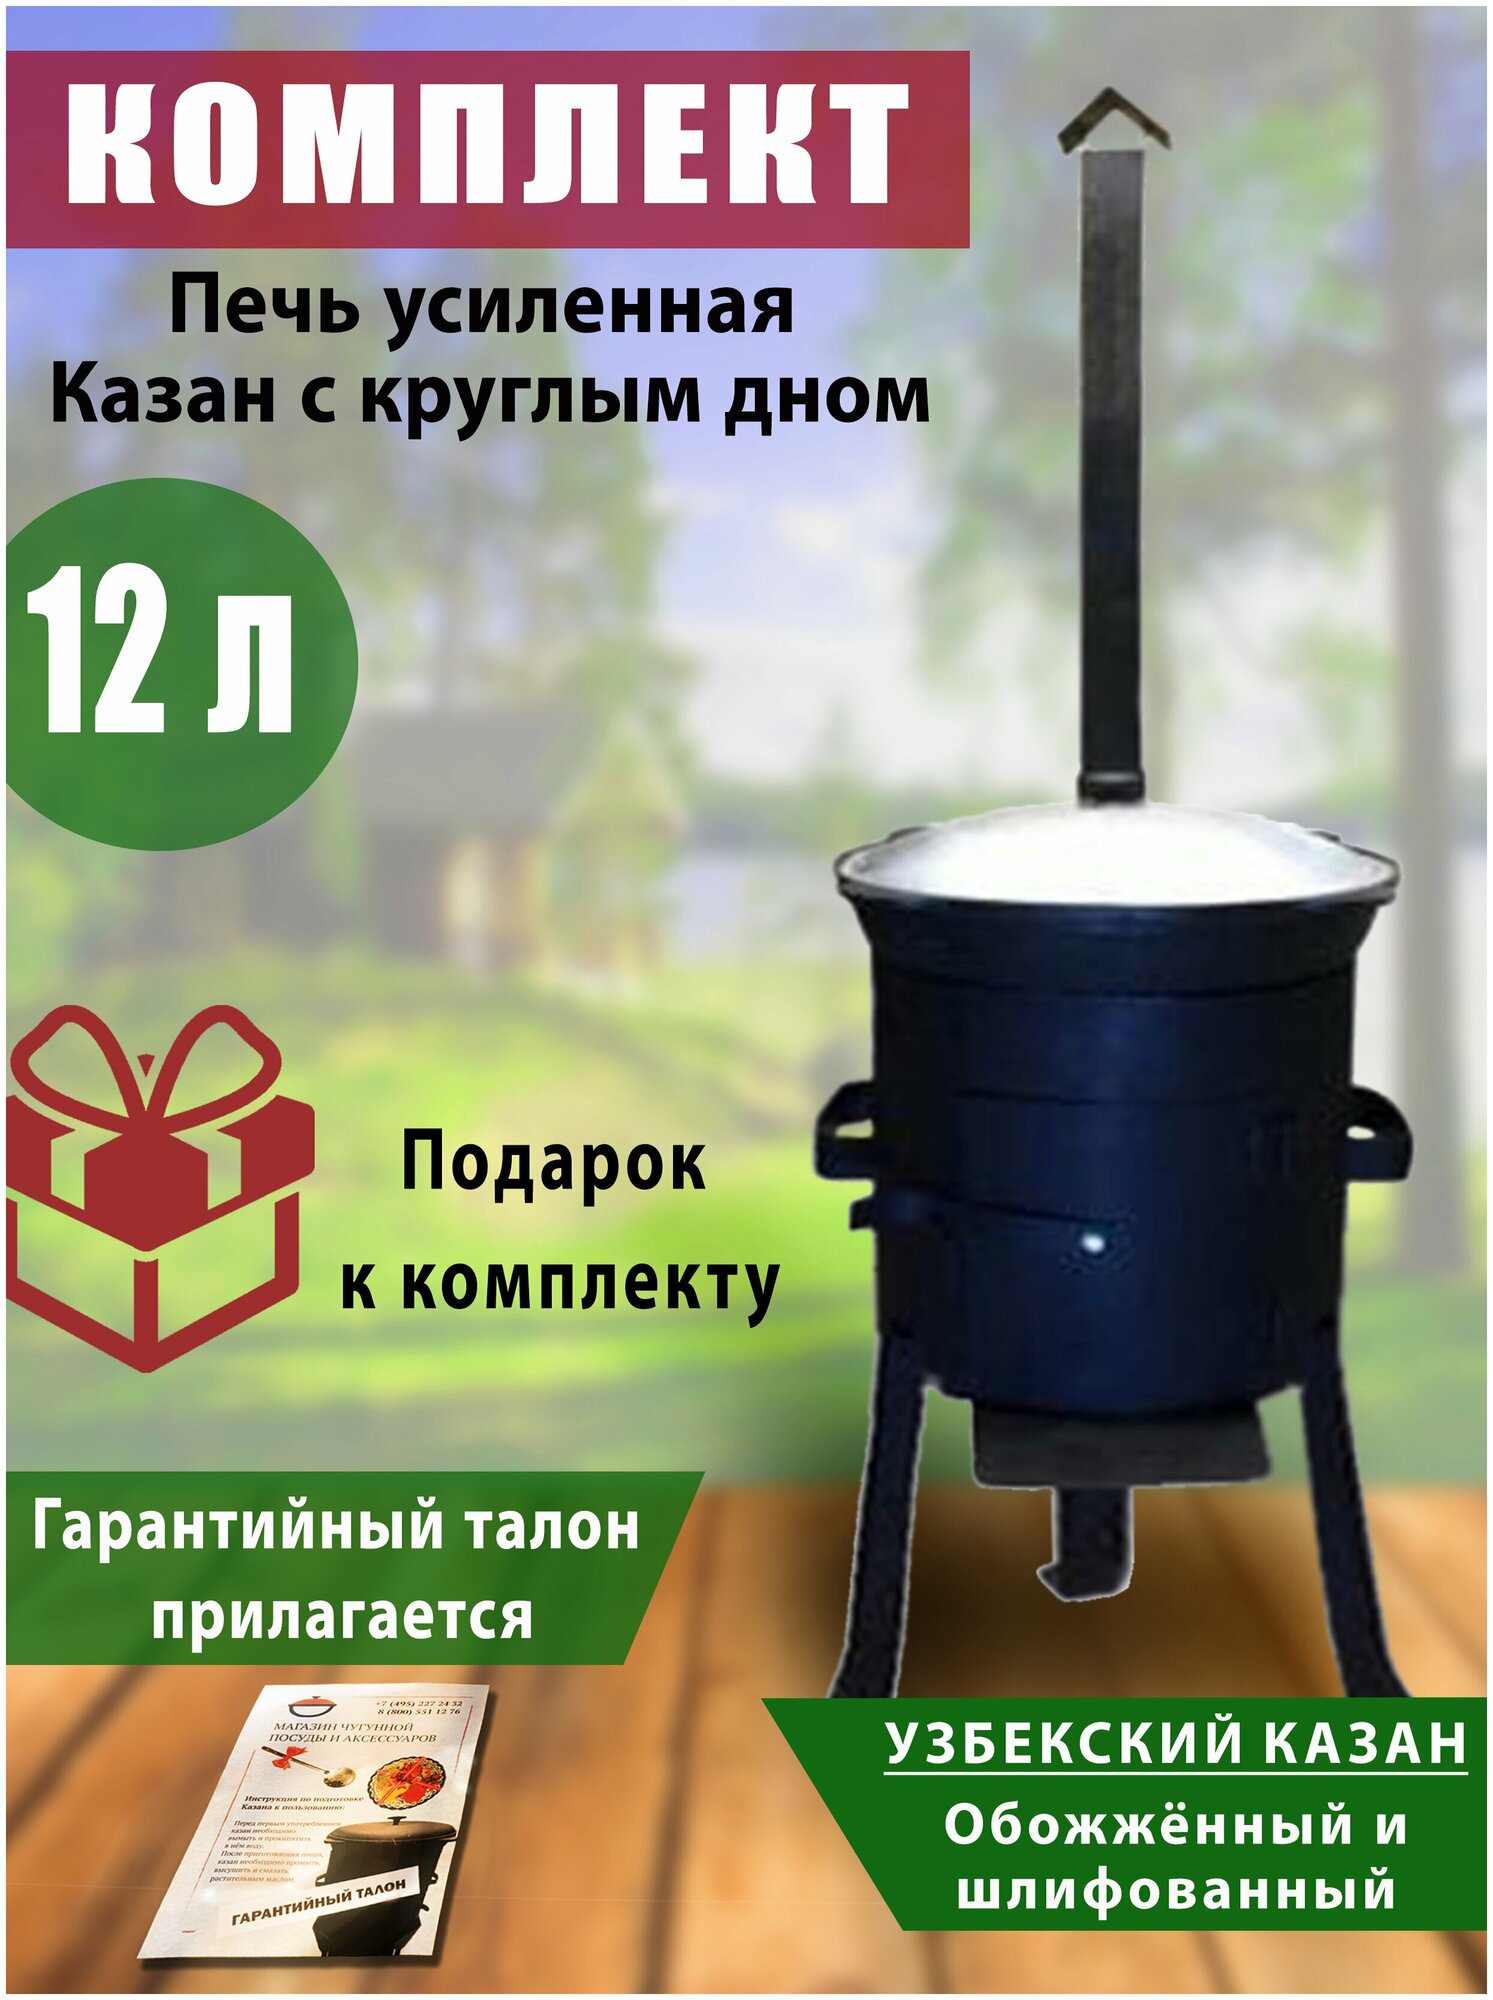 Комплект: Печь с трубой для казана и казан узбекский, чугунный, 12 литров, с круглым дном, обожженный, шлифованный, крышка алюминий.